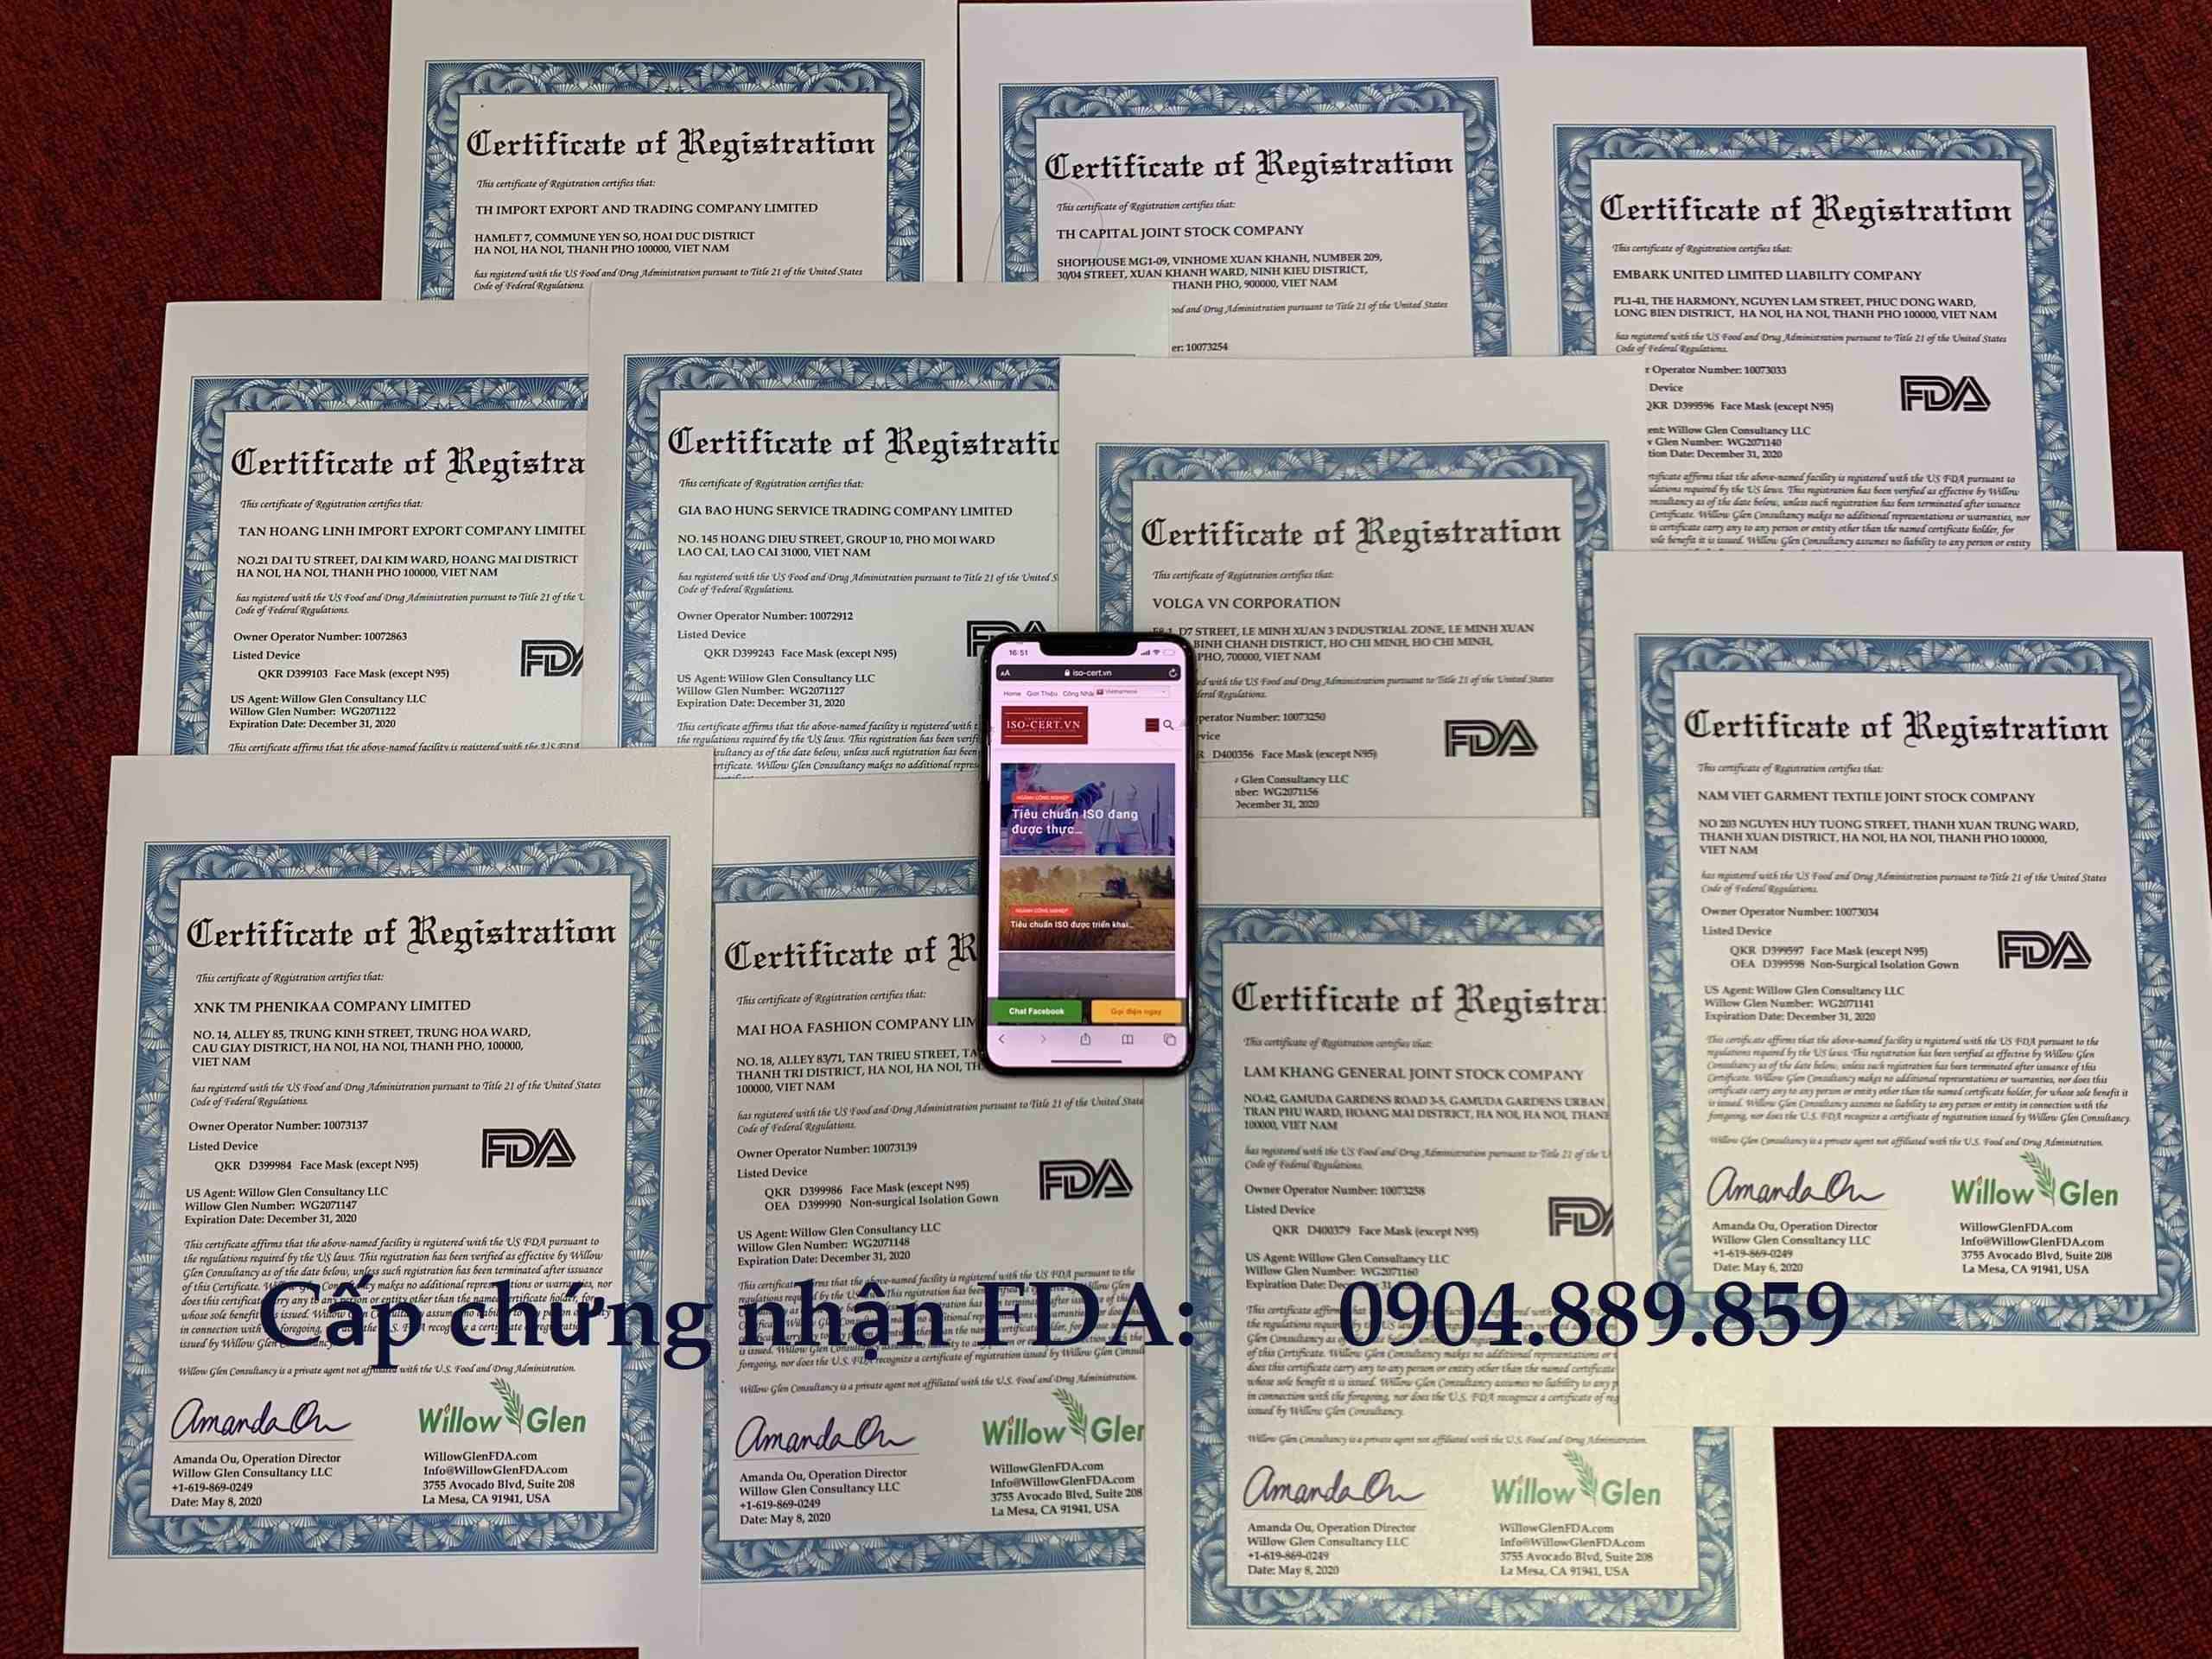 chung nhan fda 2ok - Đăng Ký FDA cho Khẩu Trang Y Tế và Vải Kháng Khuẩn